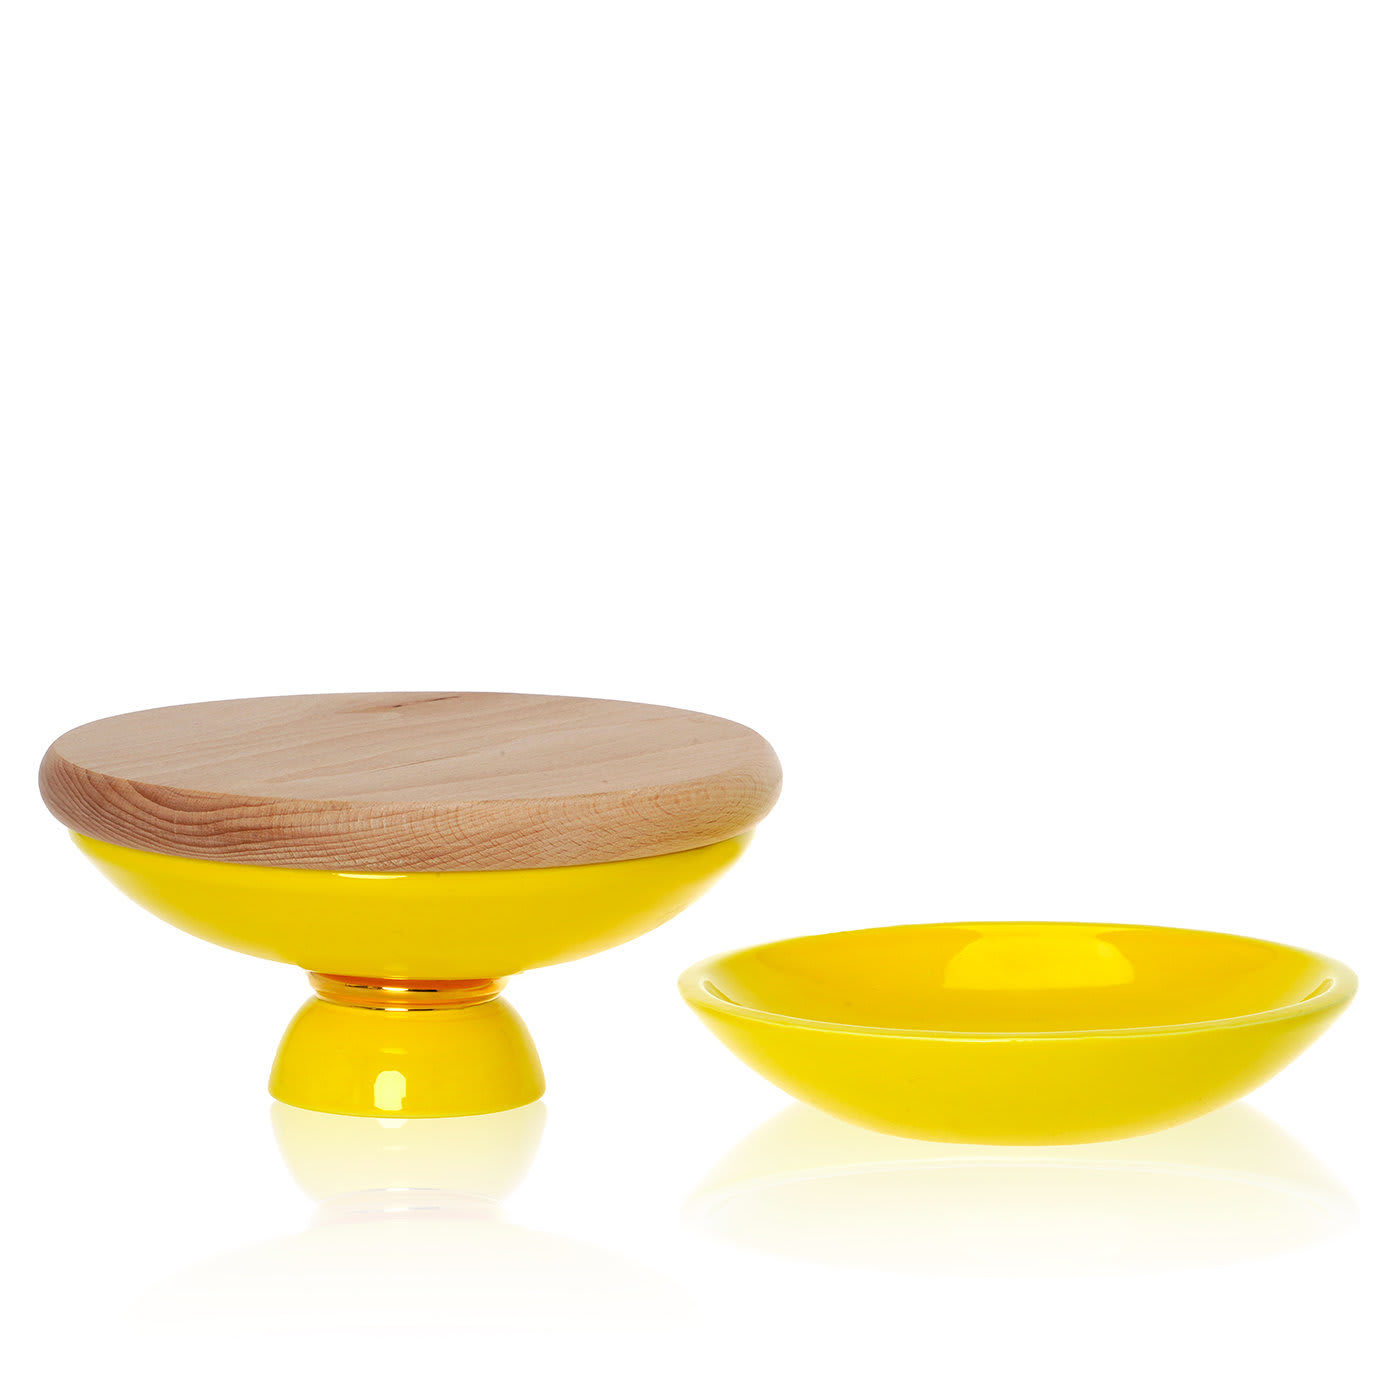 Entrèe Yellow Small Table Set - Atelier Macramè